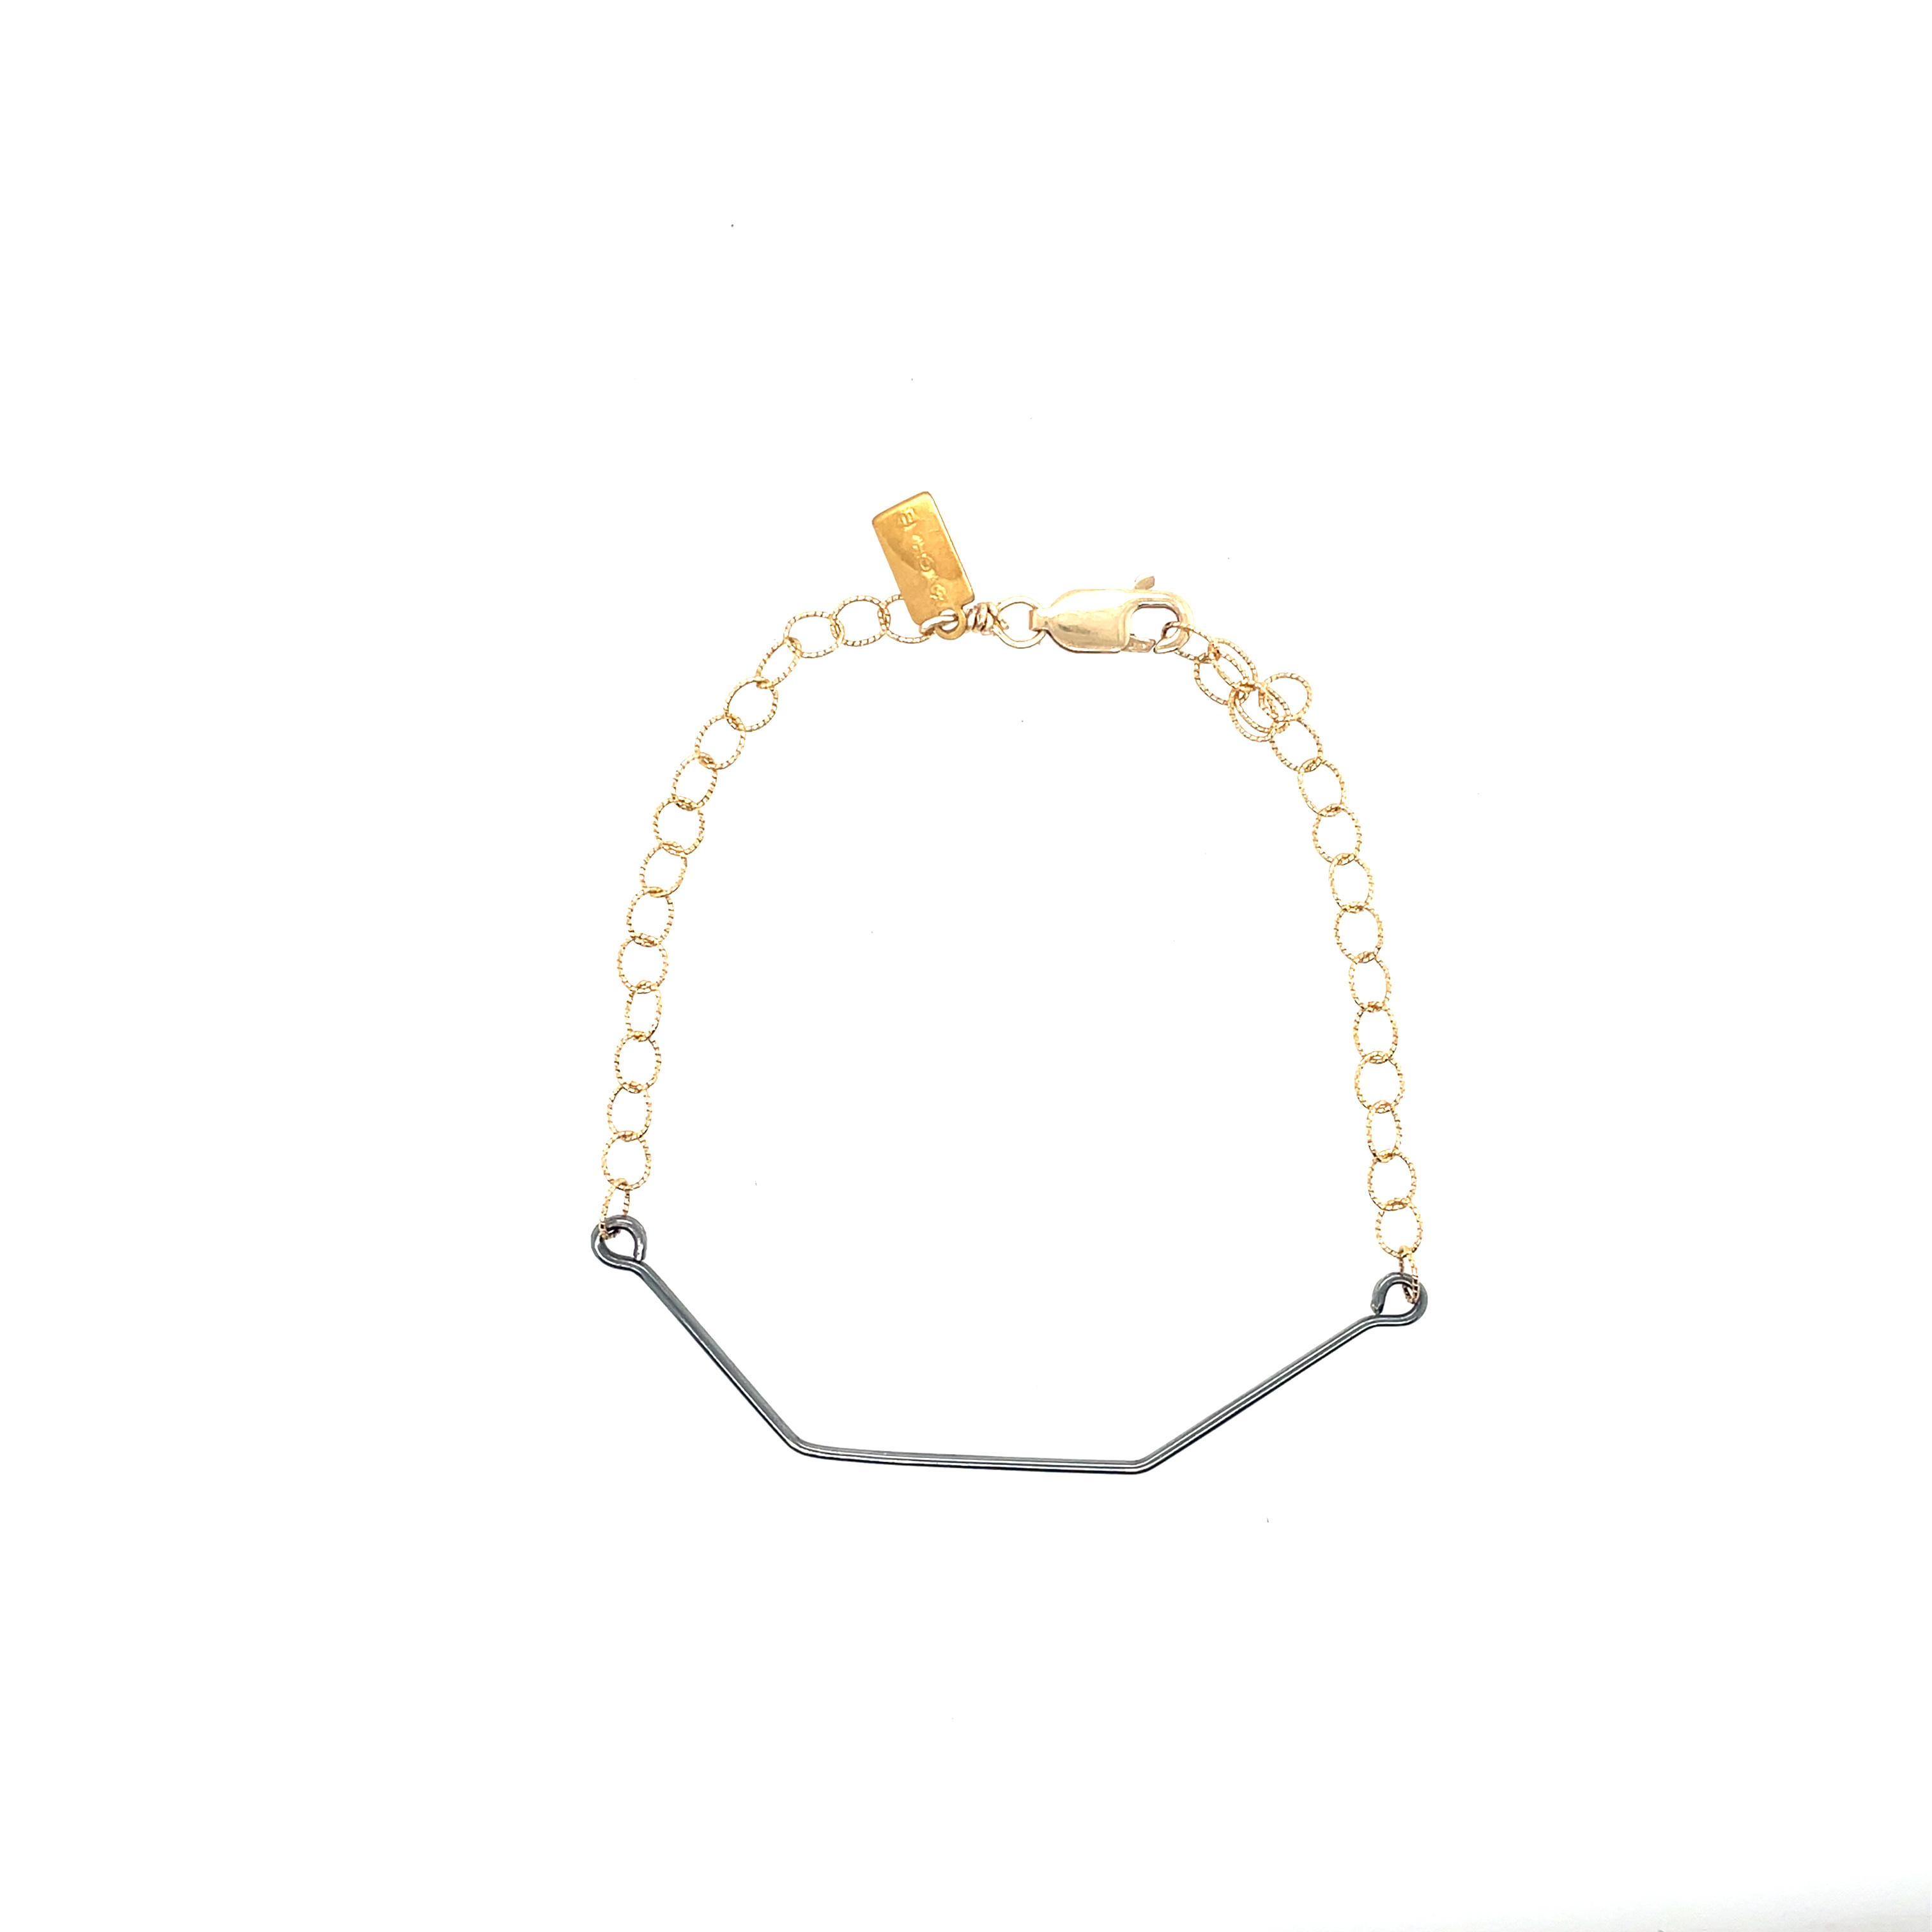 Hexagon Bar Bracelet - 14k Gold with Oxidized Bar